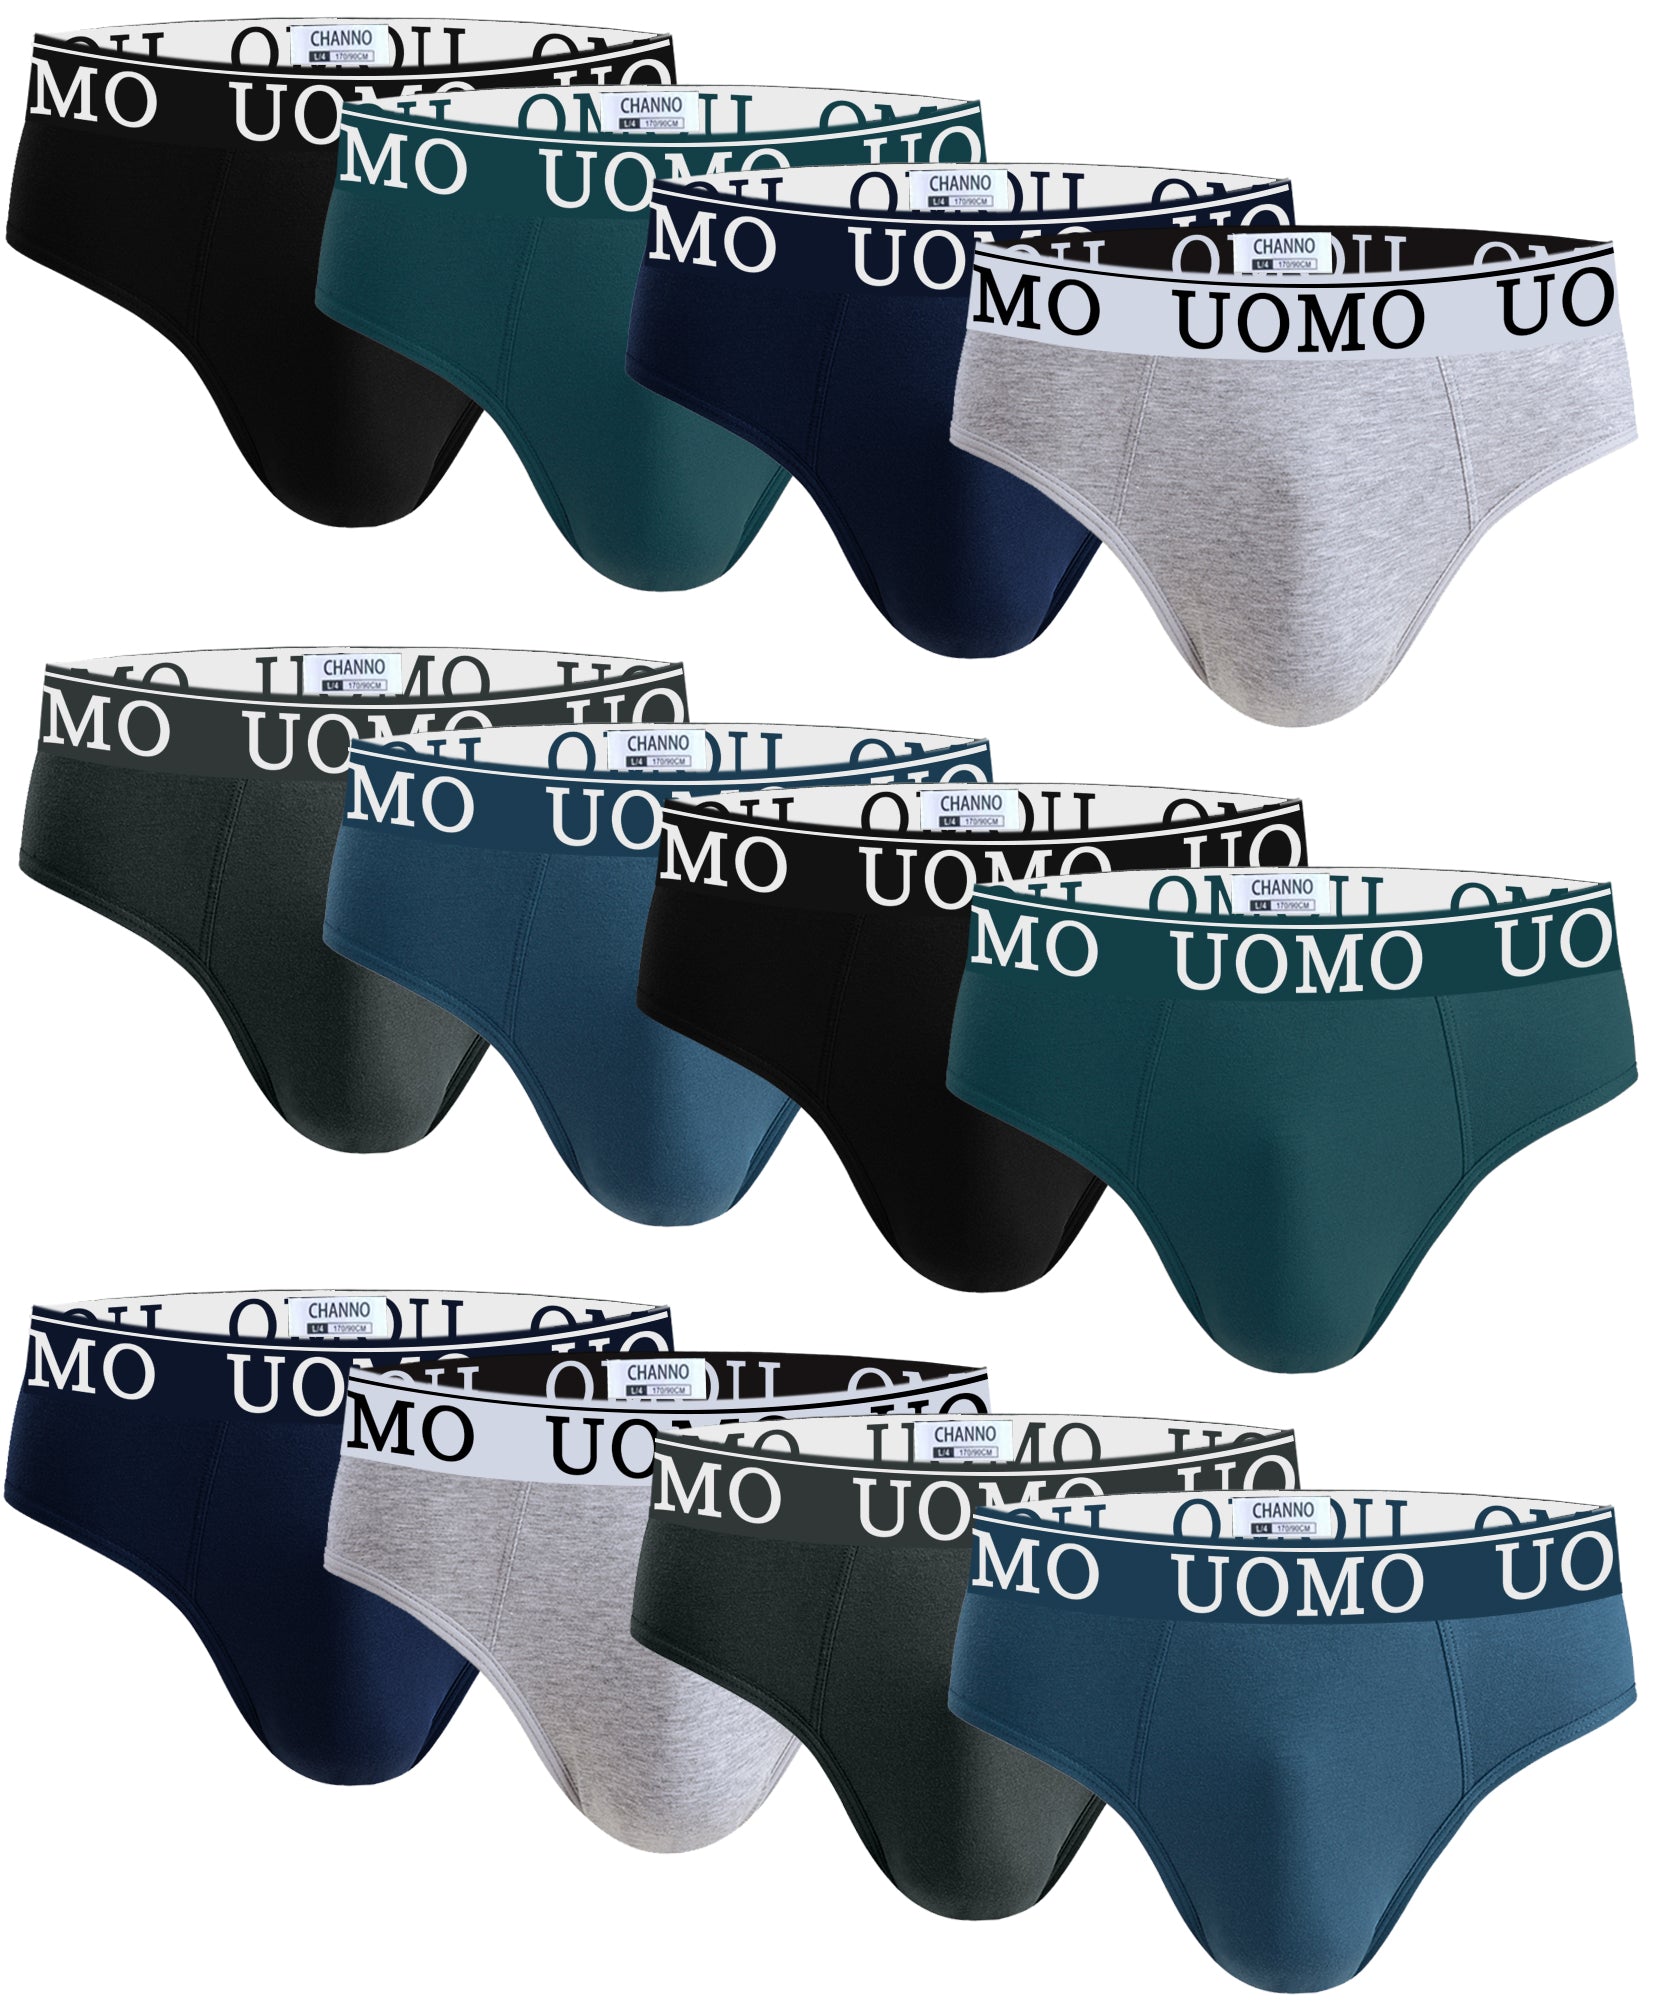 Calzoncillos Hombre Slip Costura UOMO Pack de 12 Channo